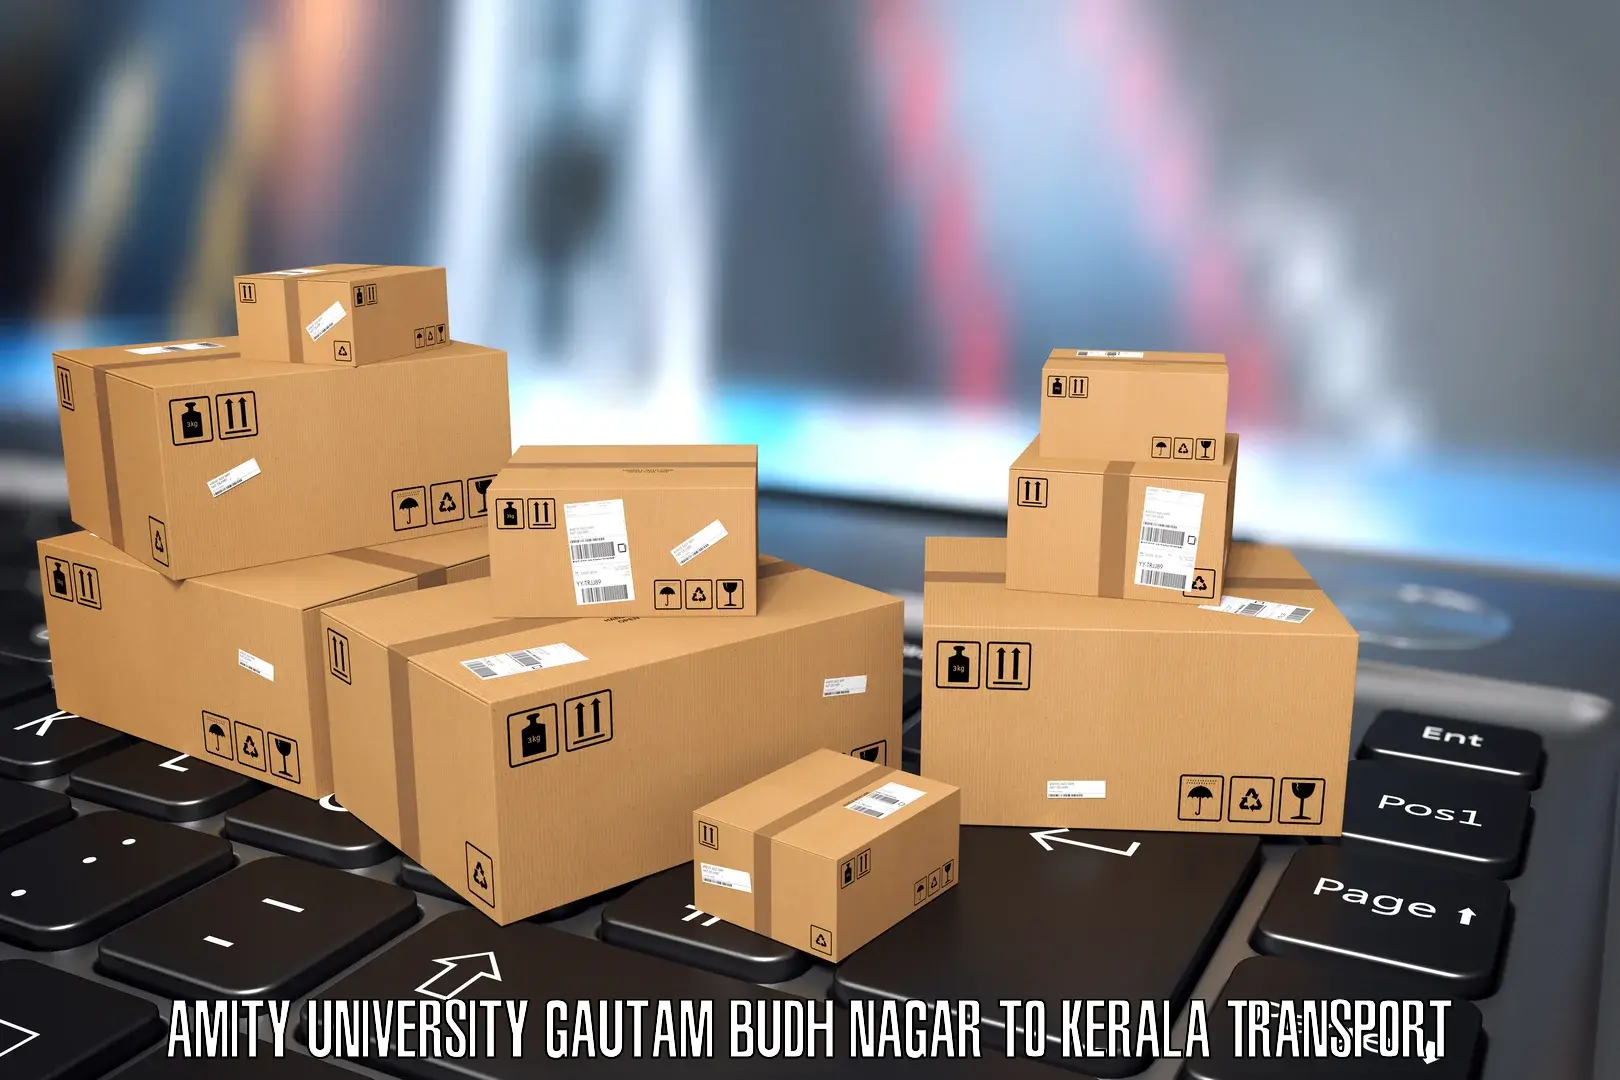 Intercity transport Amity University Gautam Budh Nagar to Kozhikode